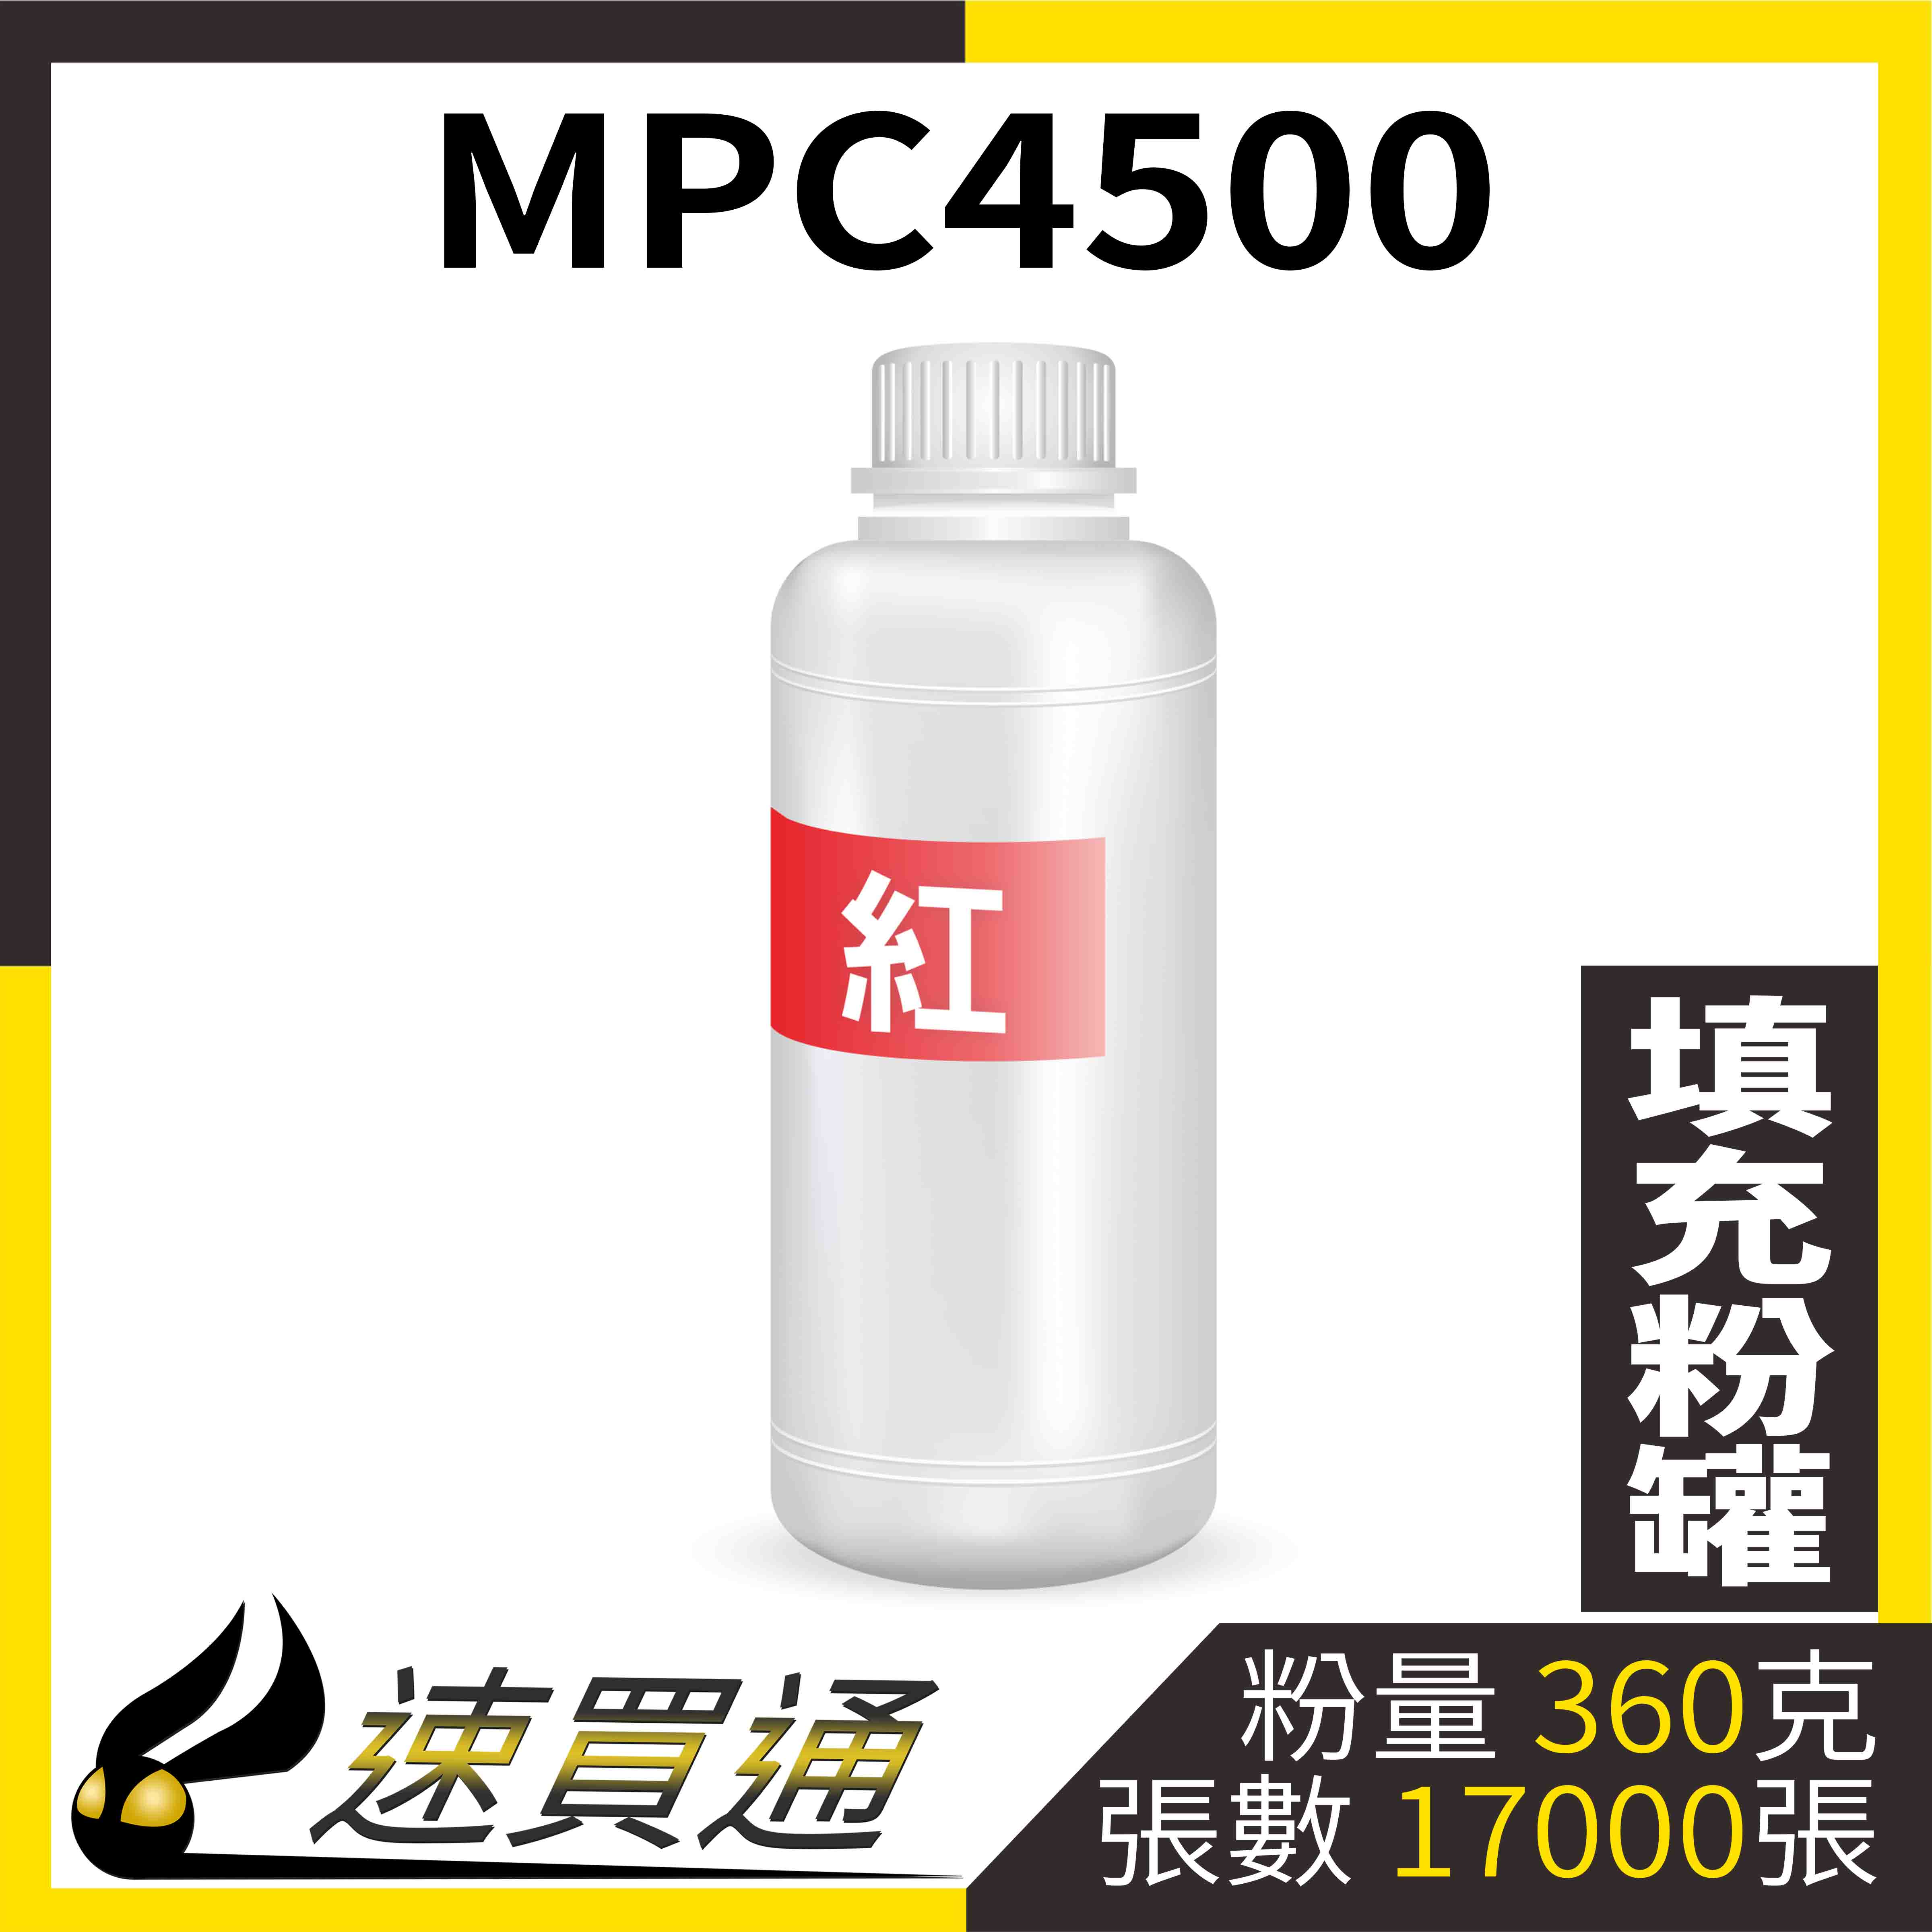 【速買通】RICOH MPC4500 紅 填充式碳粉罐